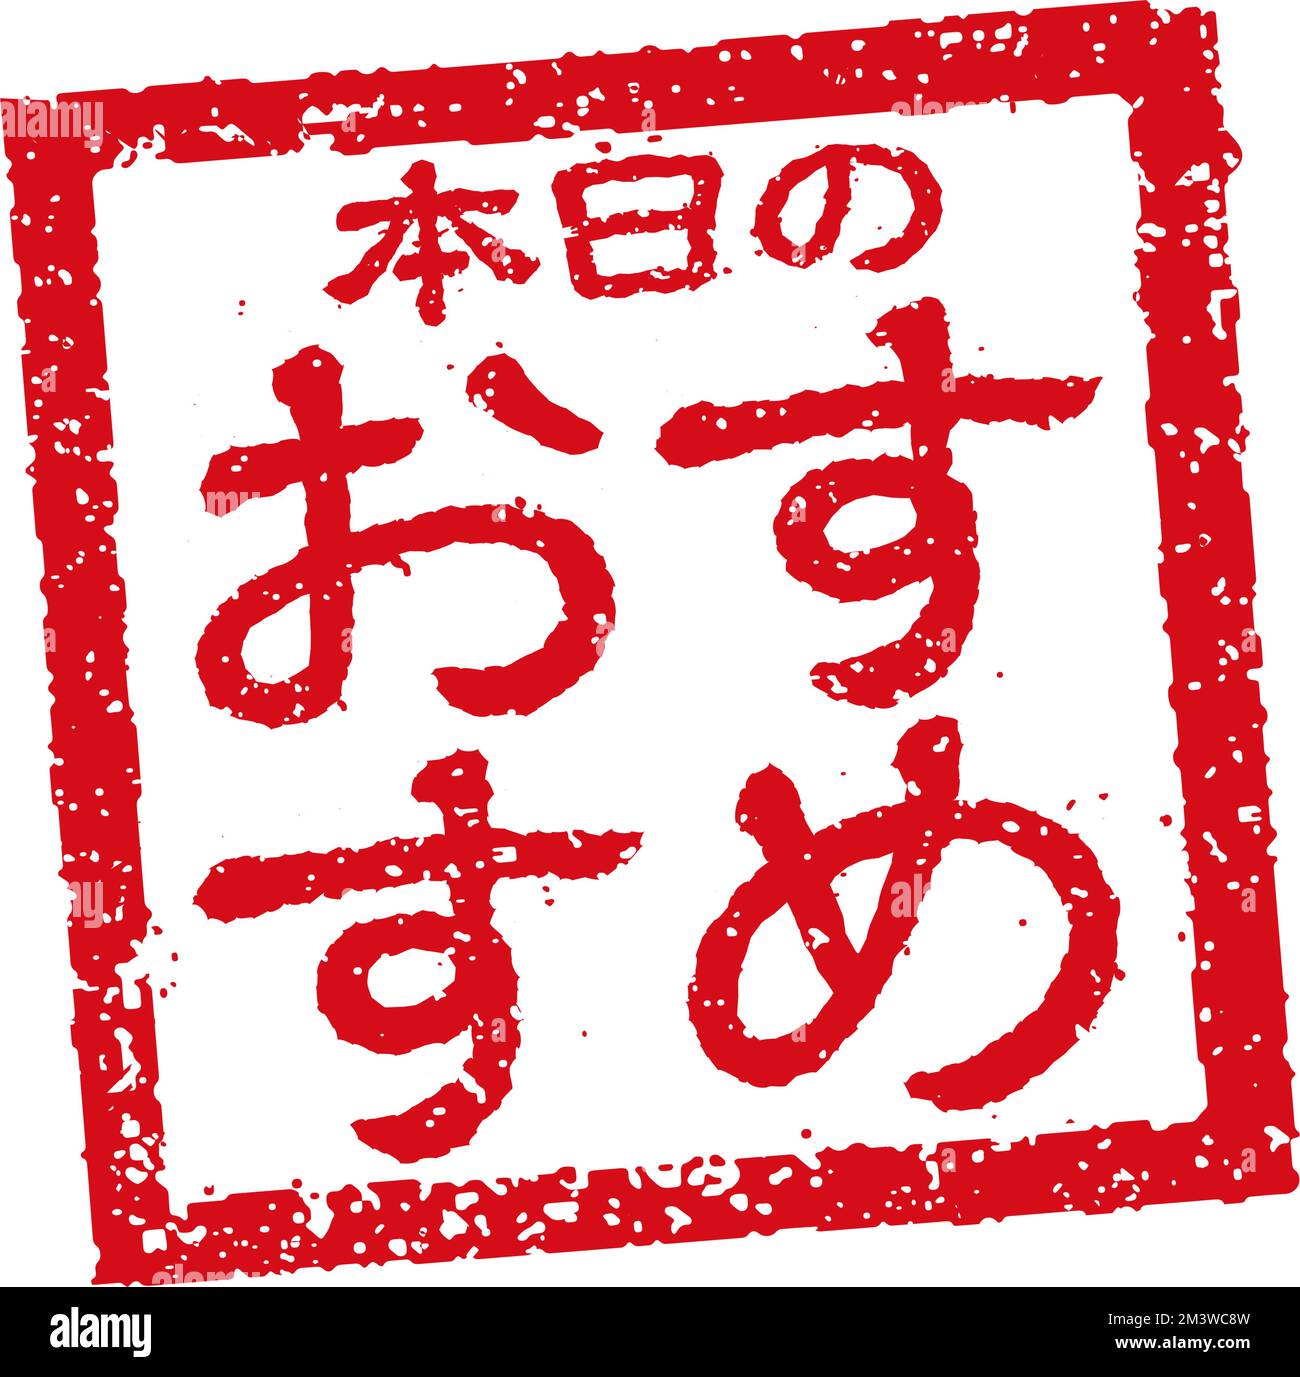 Abbildung von Gummistempeln, die häufig in japanischen Restaurants und Pubs verwendet wird. Usw. | die heutige Empfehlung Stock Vektor